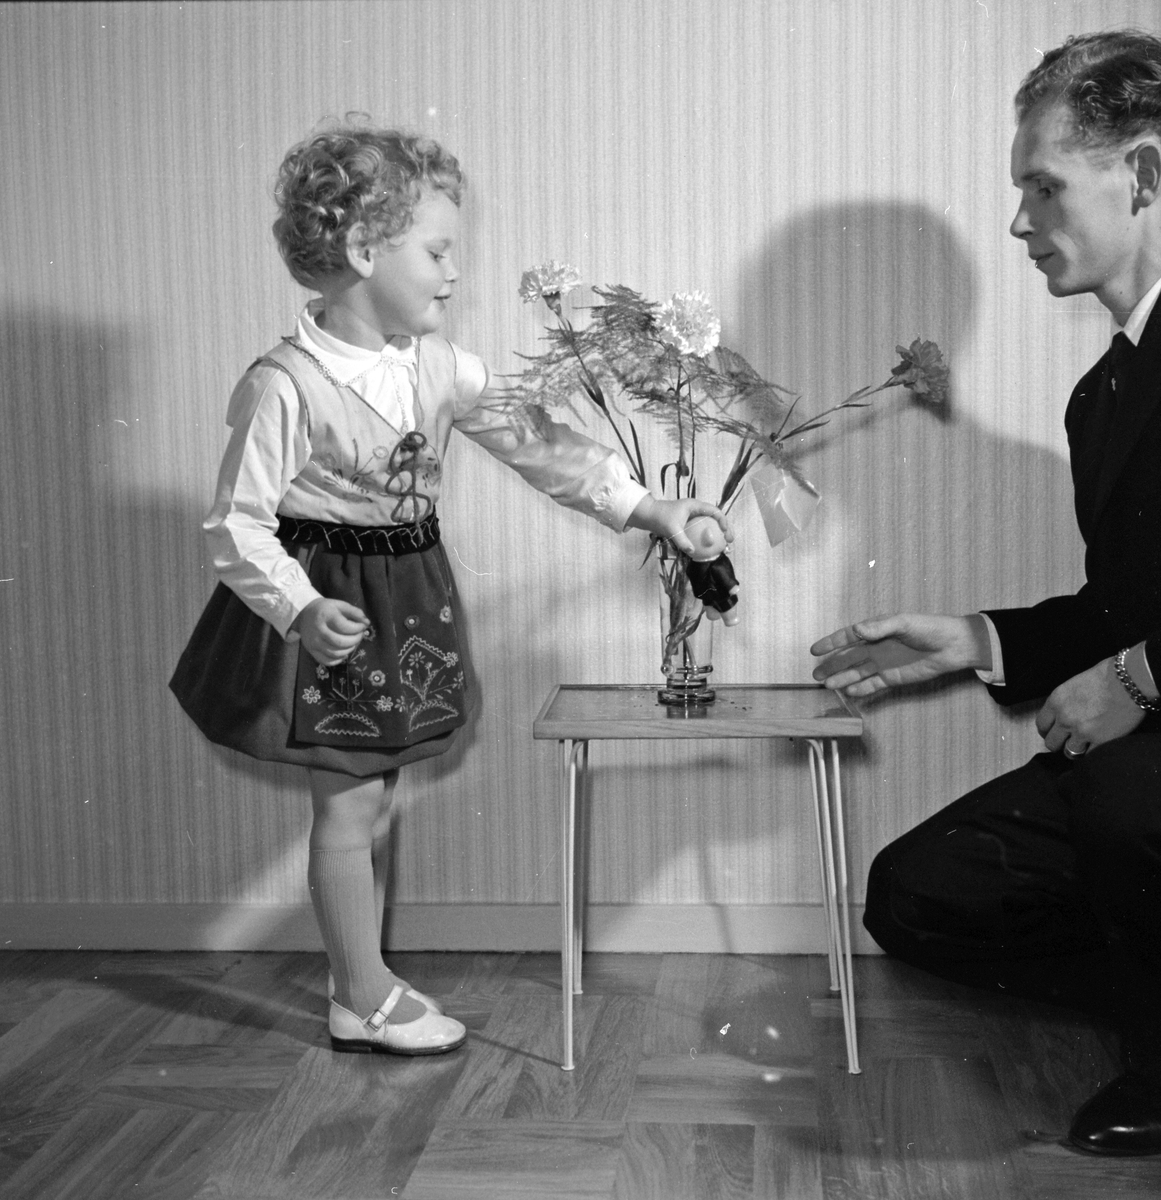 Familjen Göran Mårtensson, en liten flicka i finkläder leker med sin pappa Göran